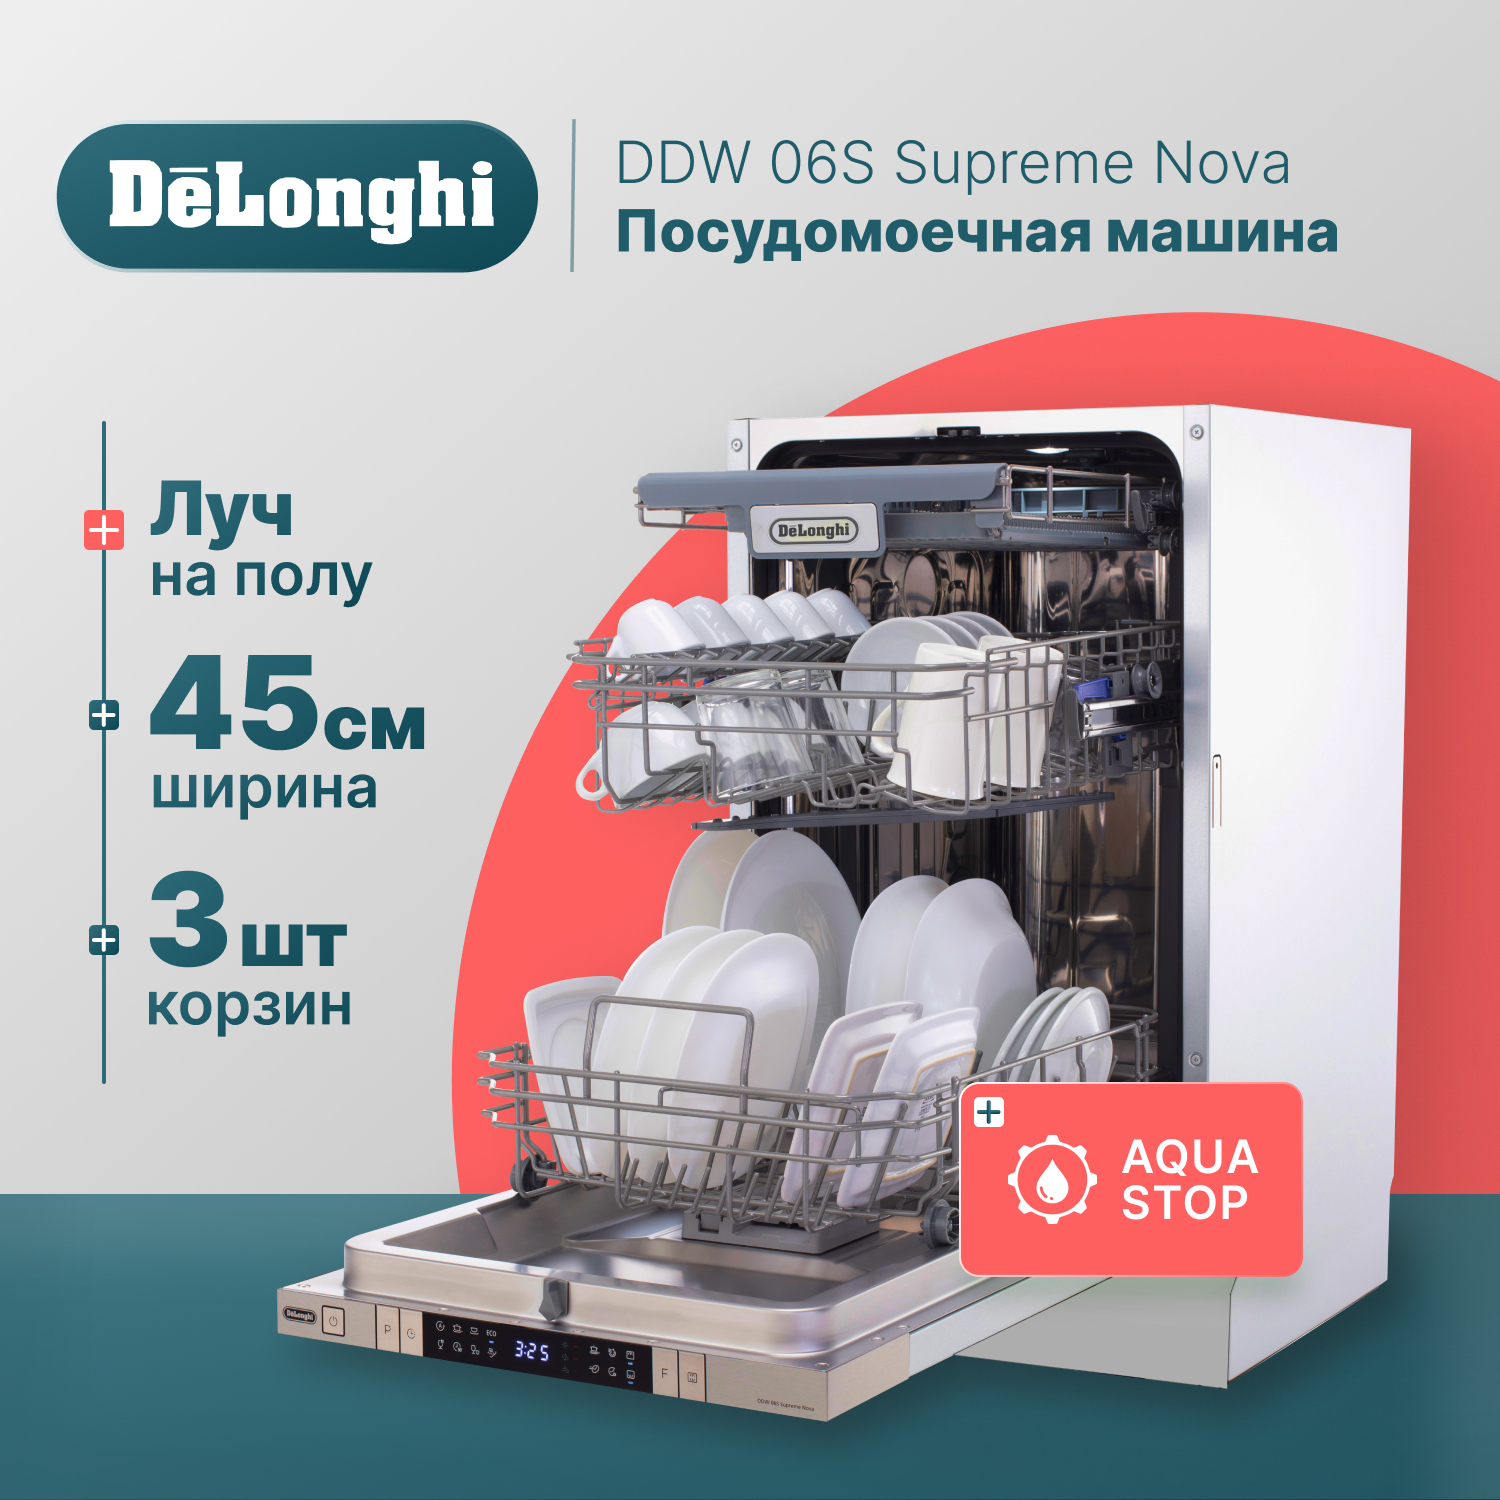 Встраиваемая посудомоечная машина Delonghi DDW06S Supreme Nova встраиваемая посудомоечная машина delonghi ddw 06 s